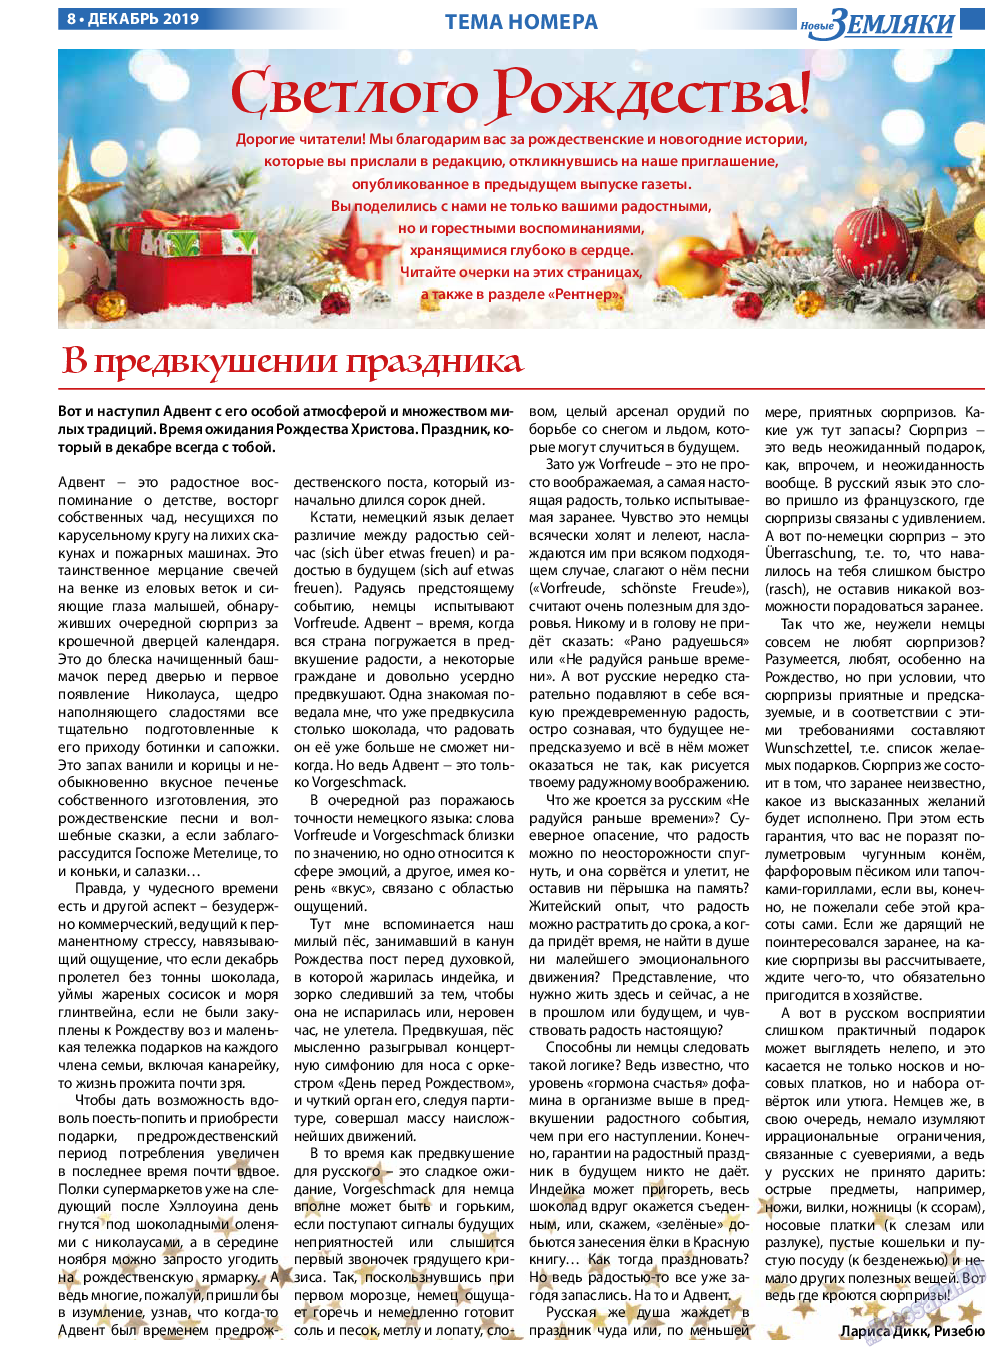 Новые Земляки, газета. 2019 №12 стр.8